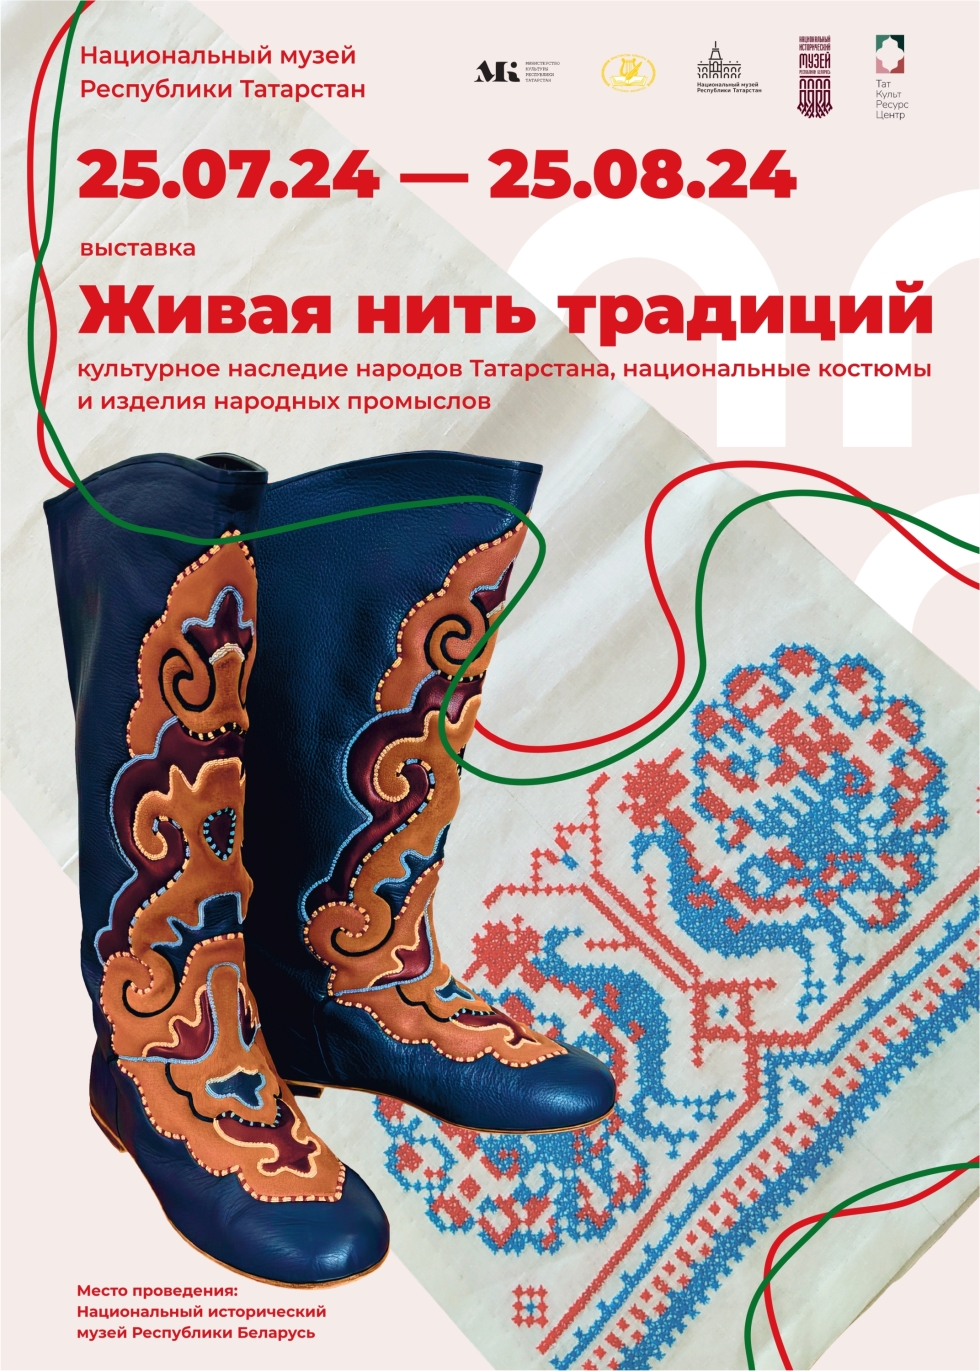 Выставка «Живая нить традиций» познакомит жителей Беларуси с культурным наследием народов Татарстана